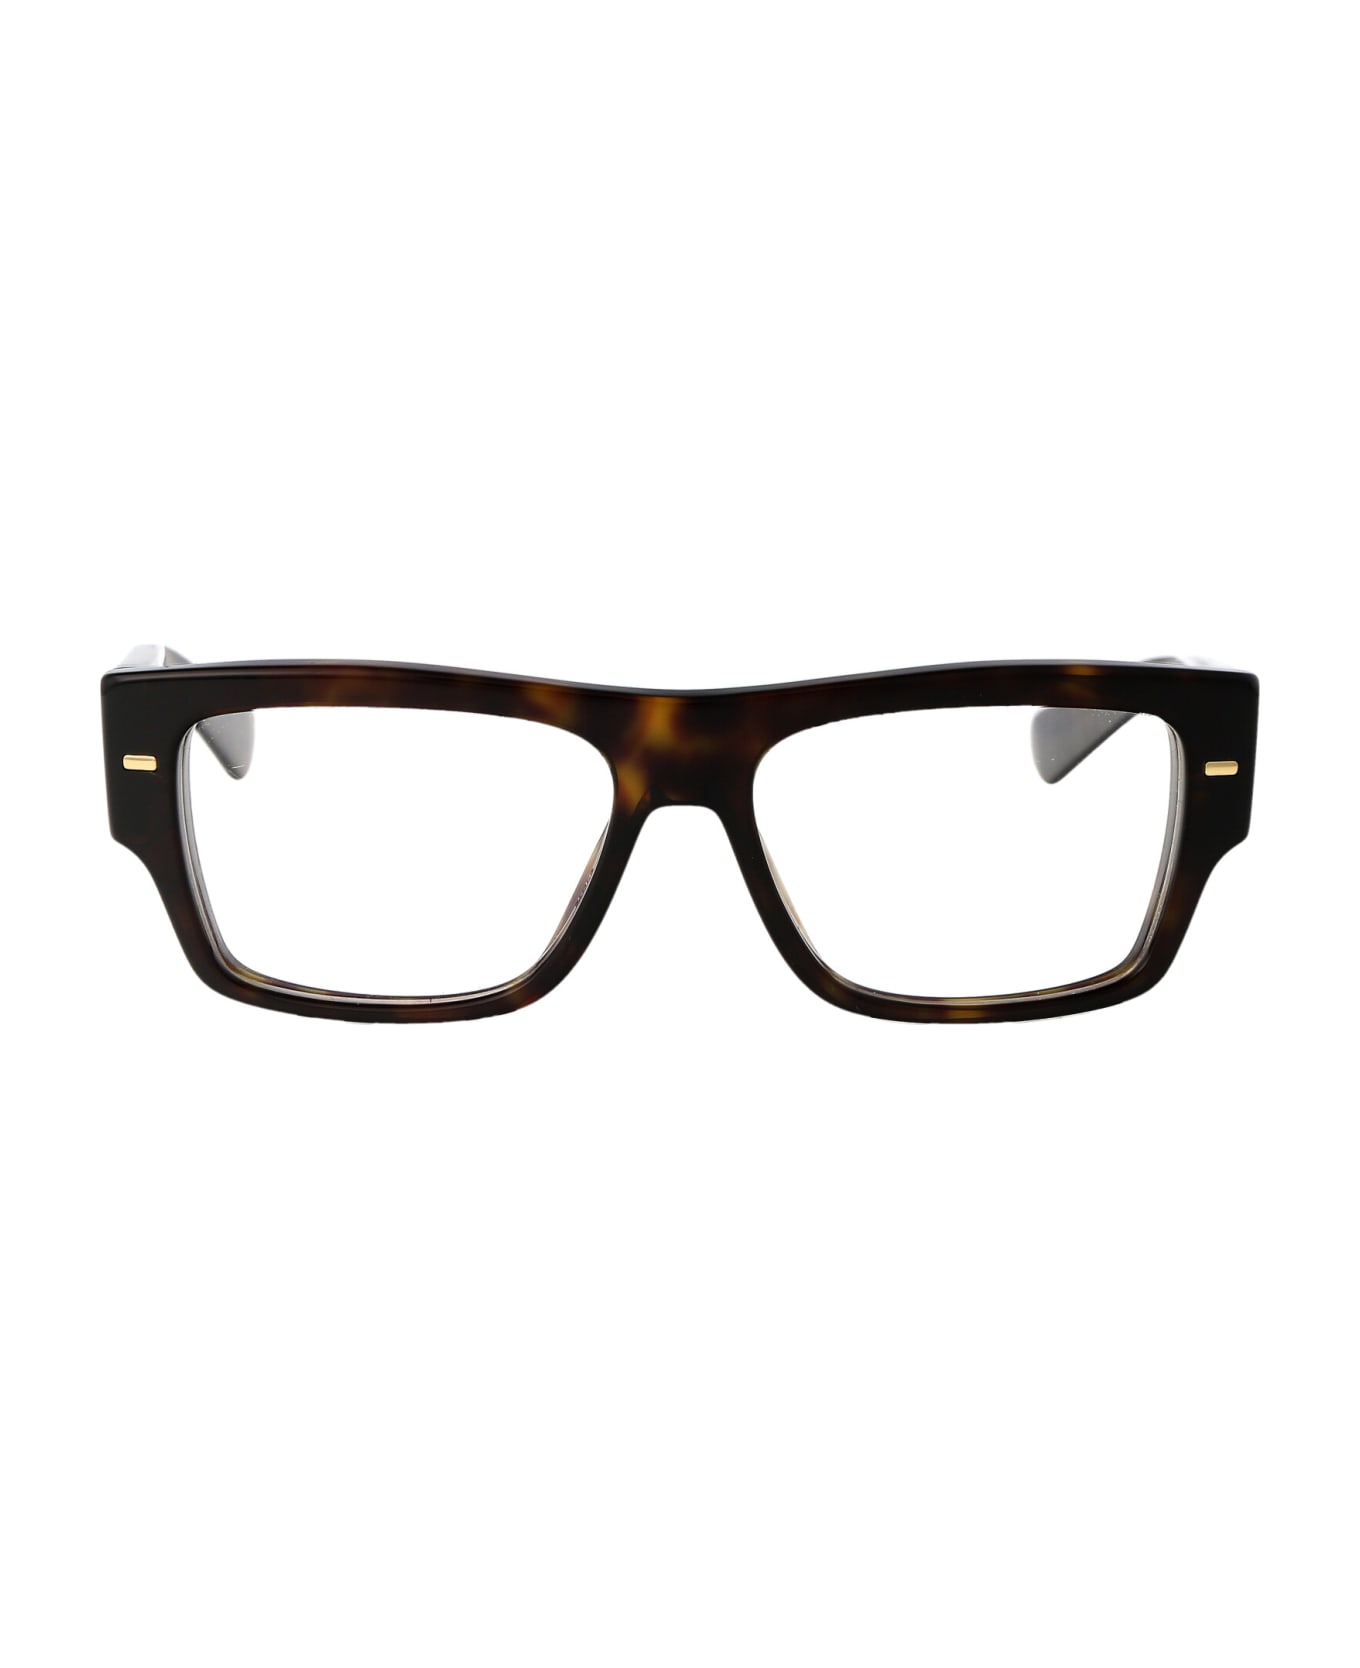 Dolce & Gabbana Eyewear 0dg3379 Glasses - 502 HAVANA